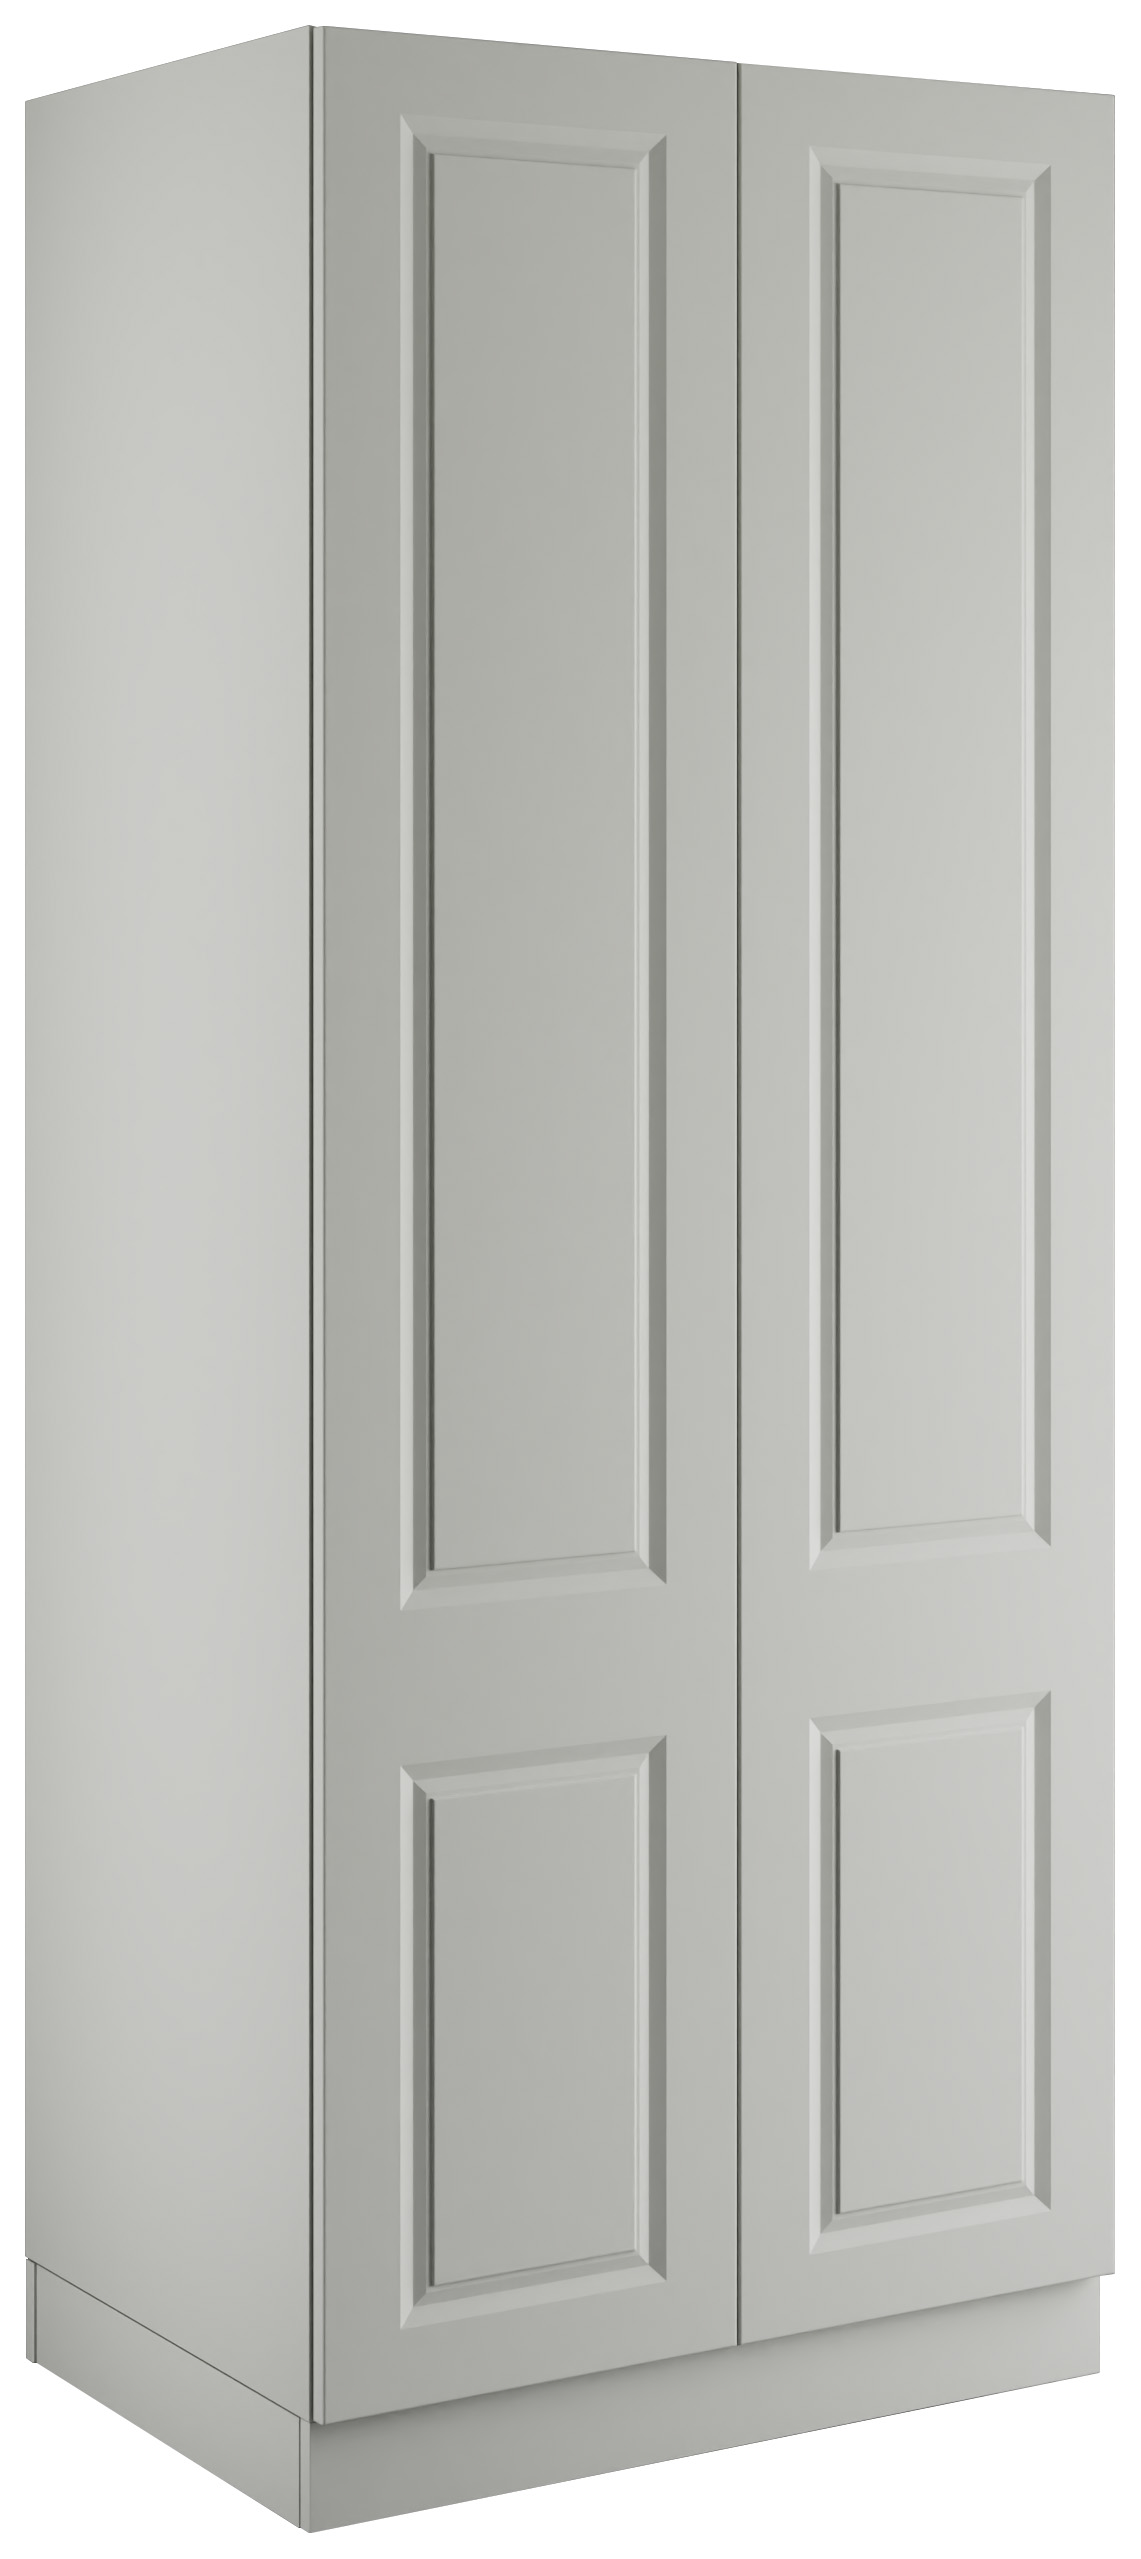 Harrogate Light Grey Double Wardrobe with Double Rail - 900 x 2260 x 608mm